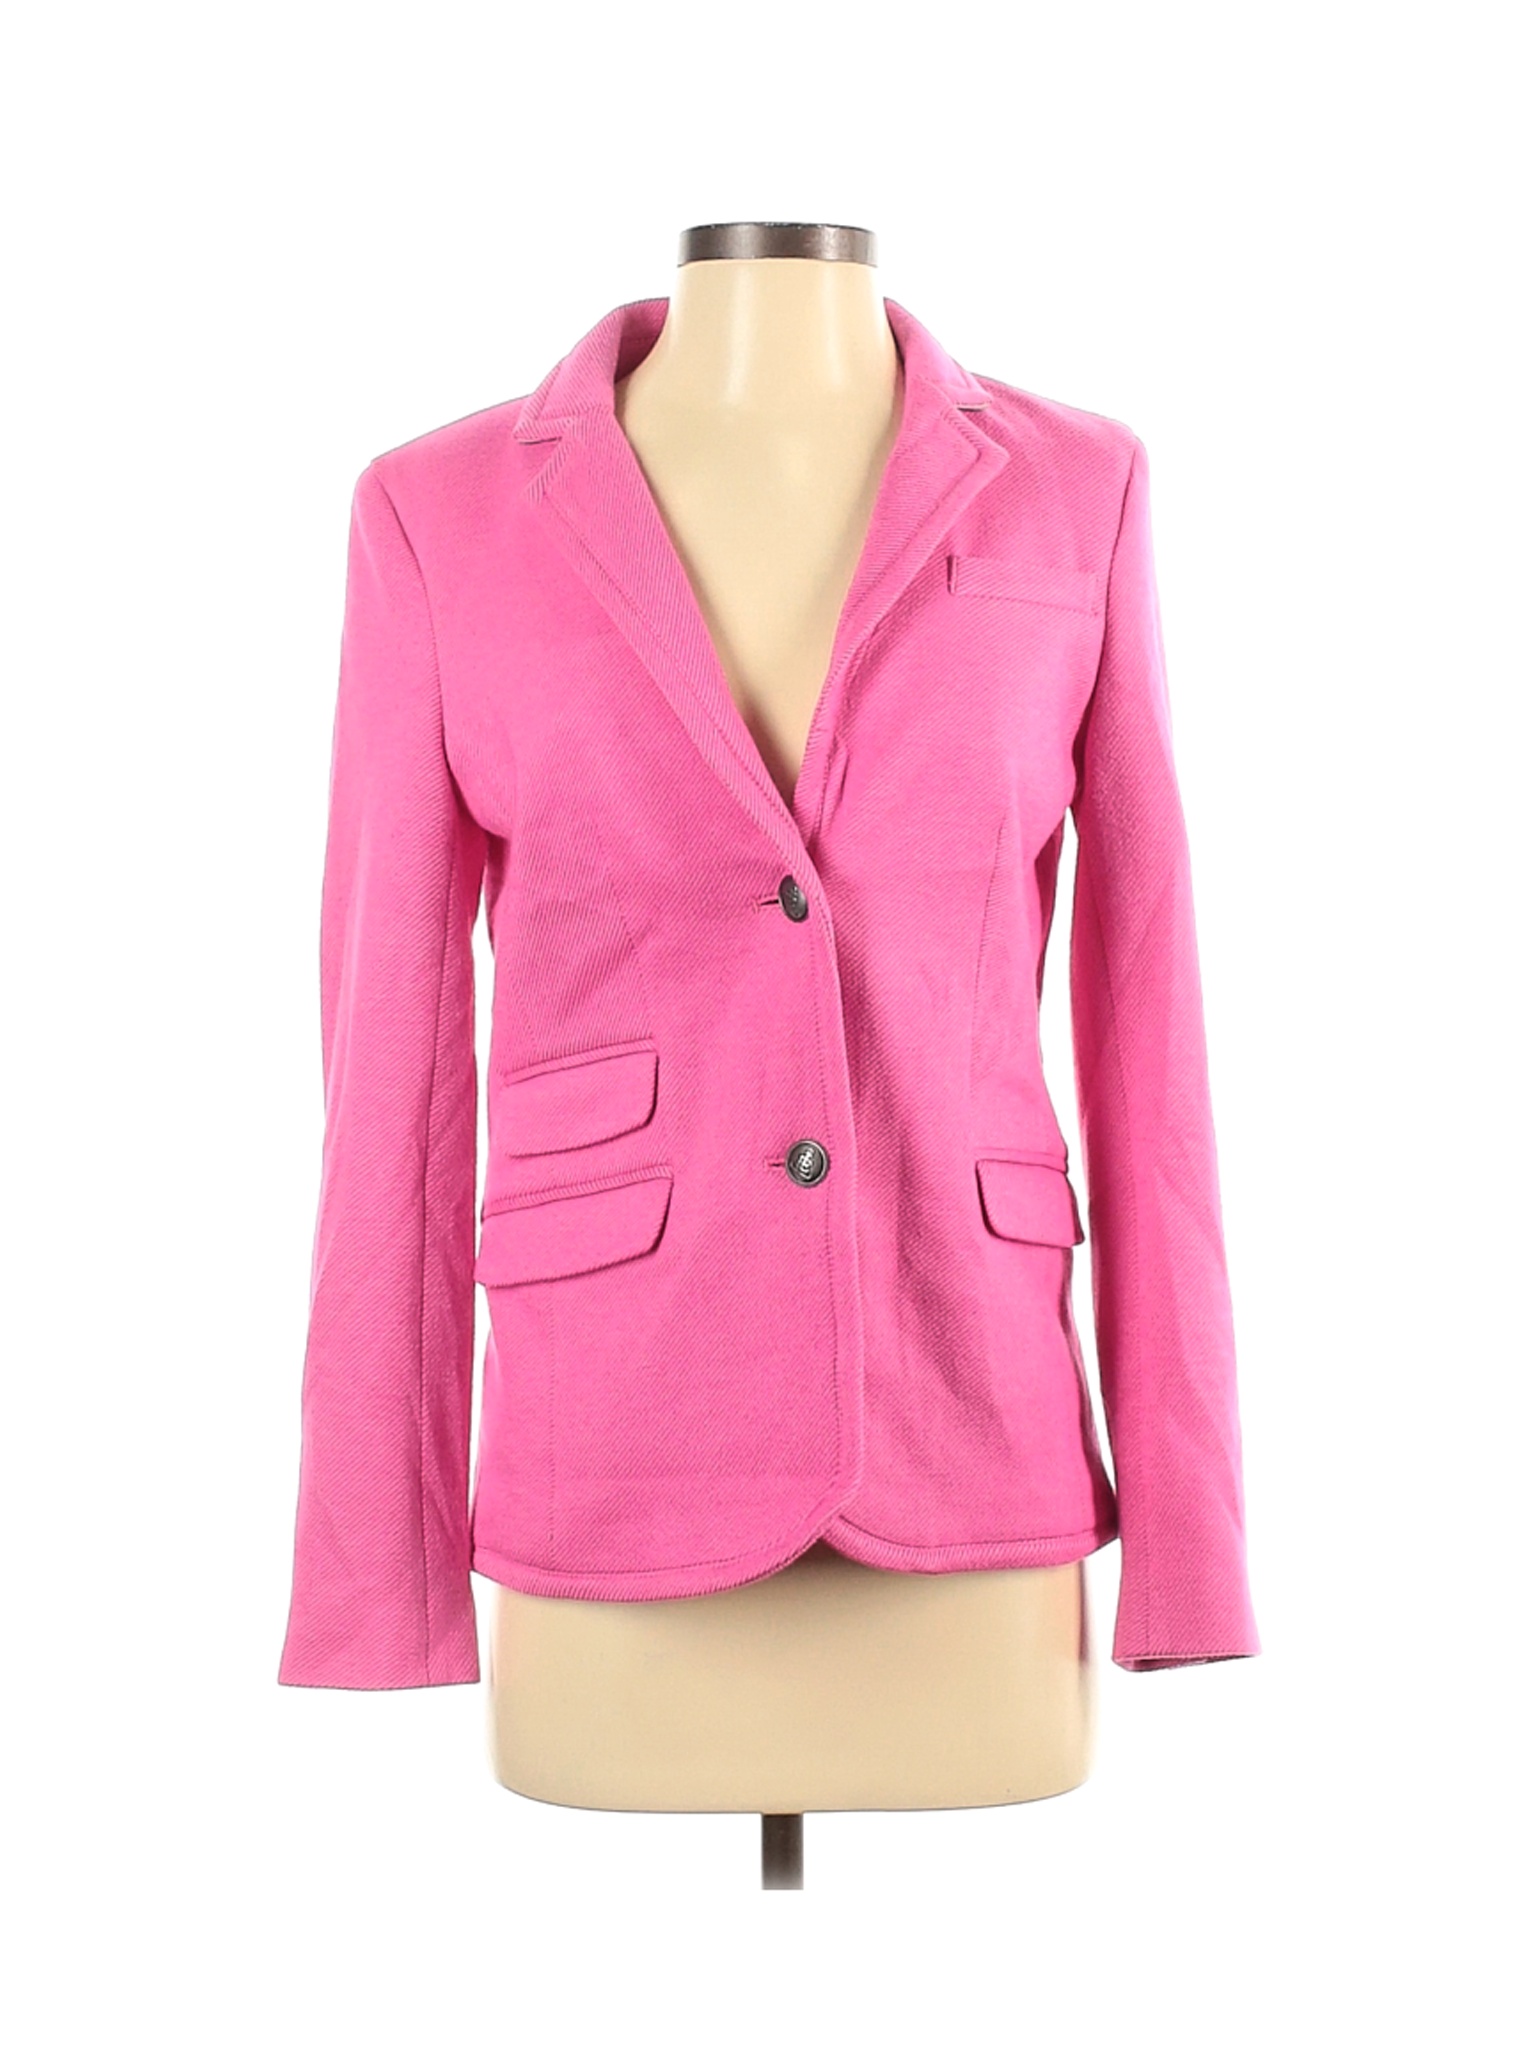 Lands' End Women Pink Blazer 4 | eBay